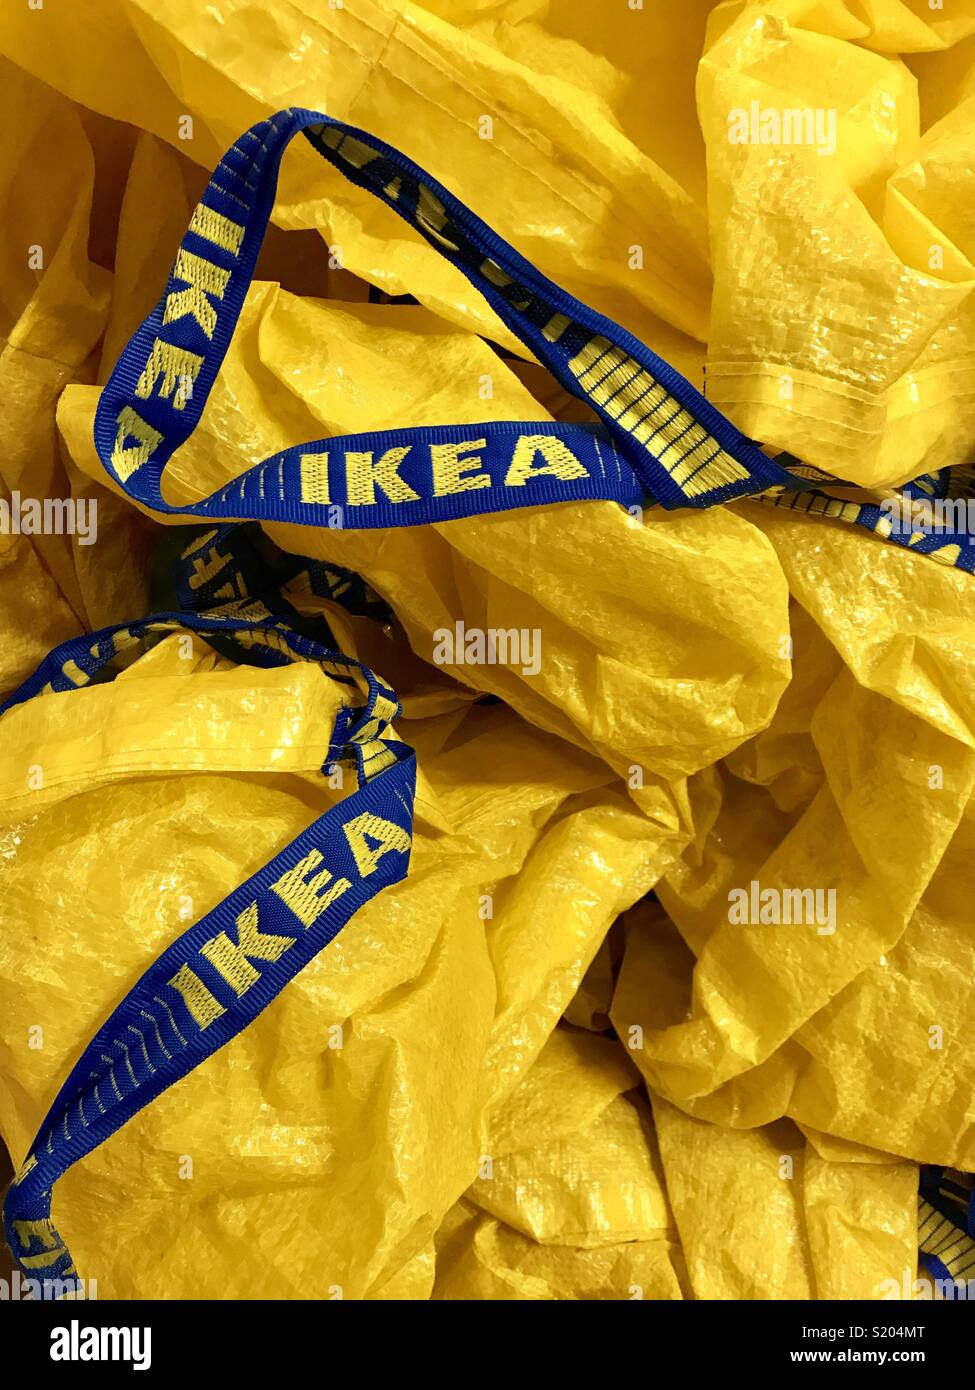 Kunststoff Einkaufstaschen der großen Einzelhändler Ikea Stockfoto